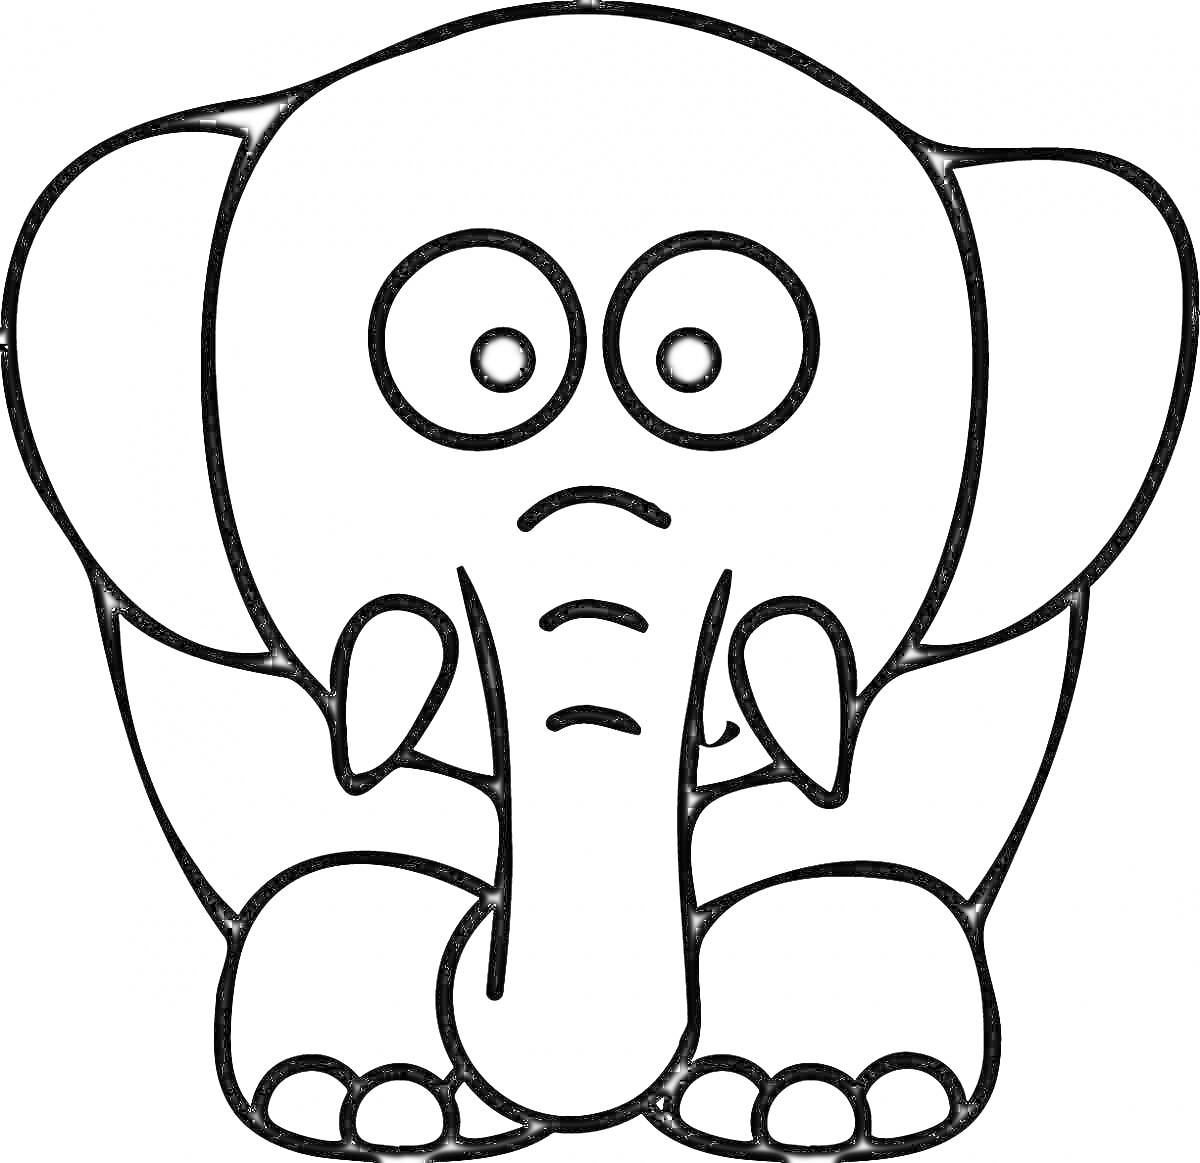 слоник с большими глазами и длинным хоботом, сидящий на задних лапах